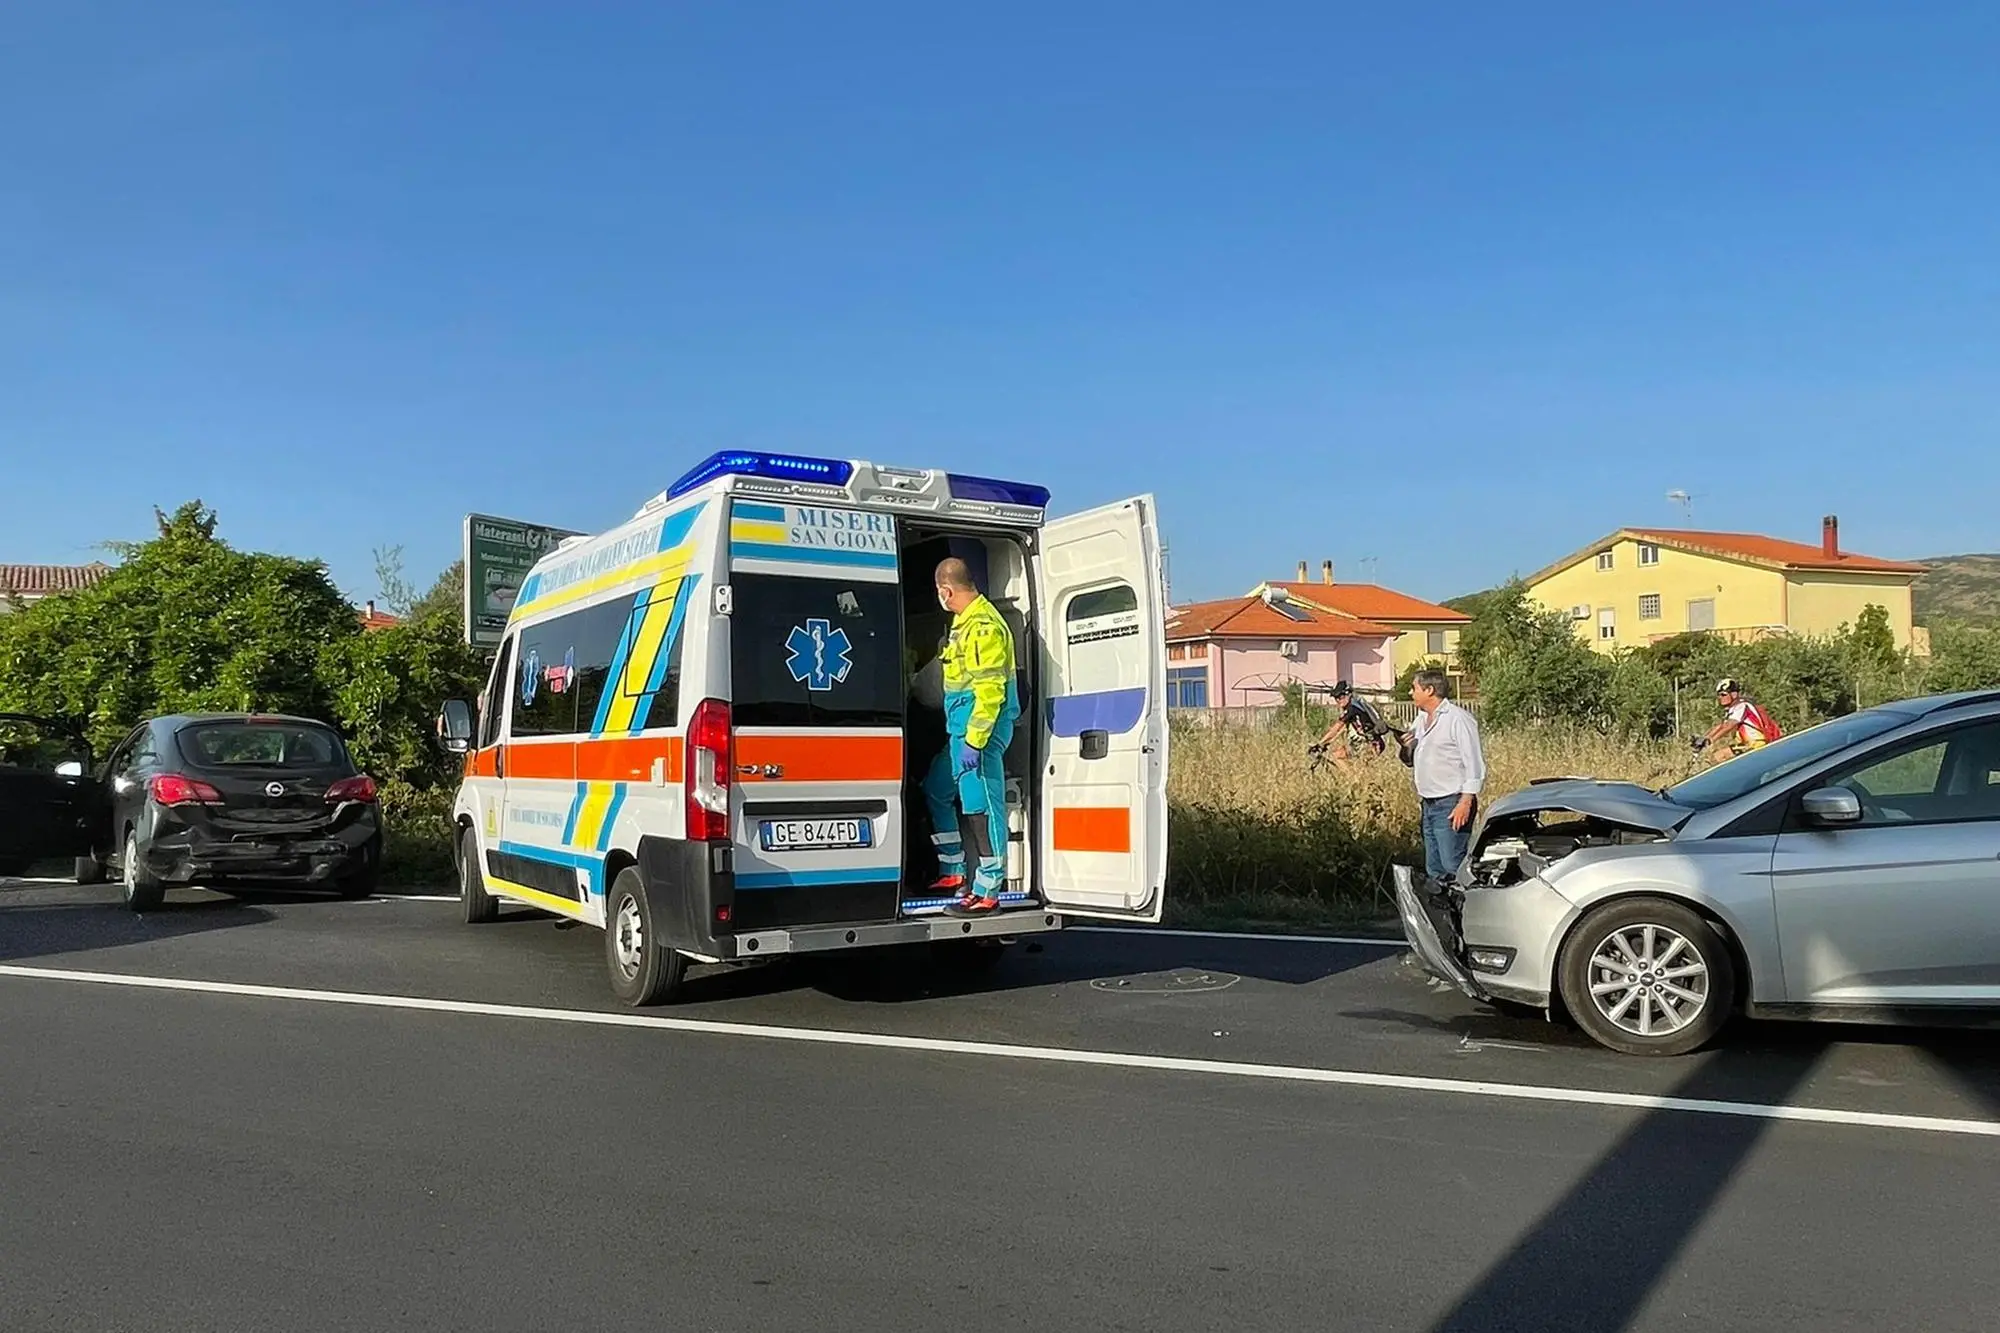 Le auto coinvolte e l'ambulanza delle Misericordie sul posto (foto Fabio Murru)